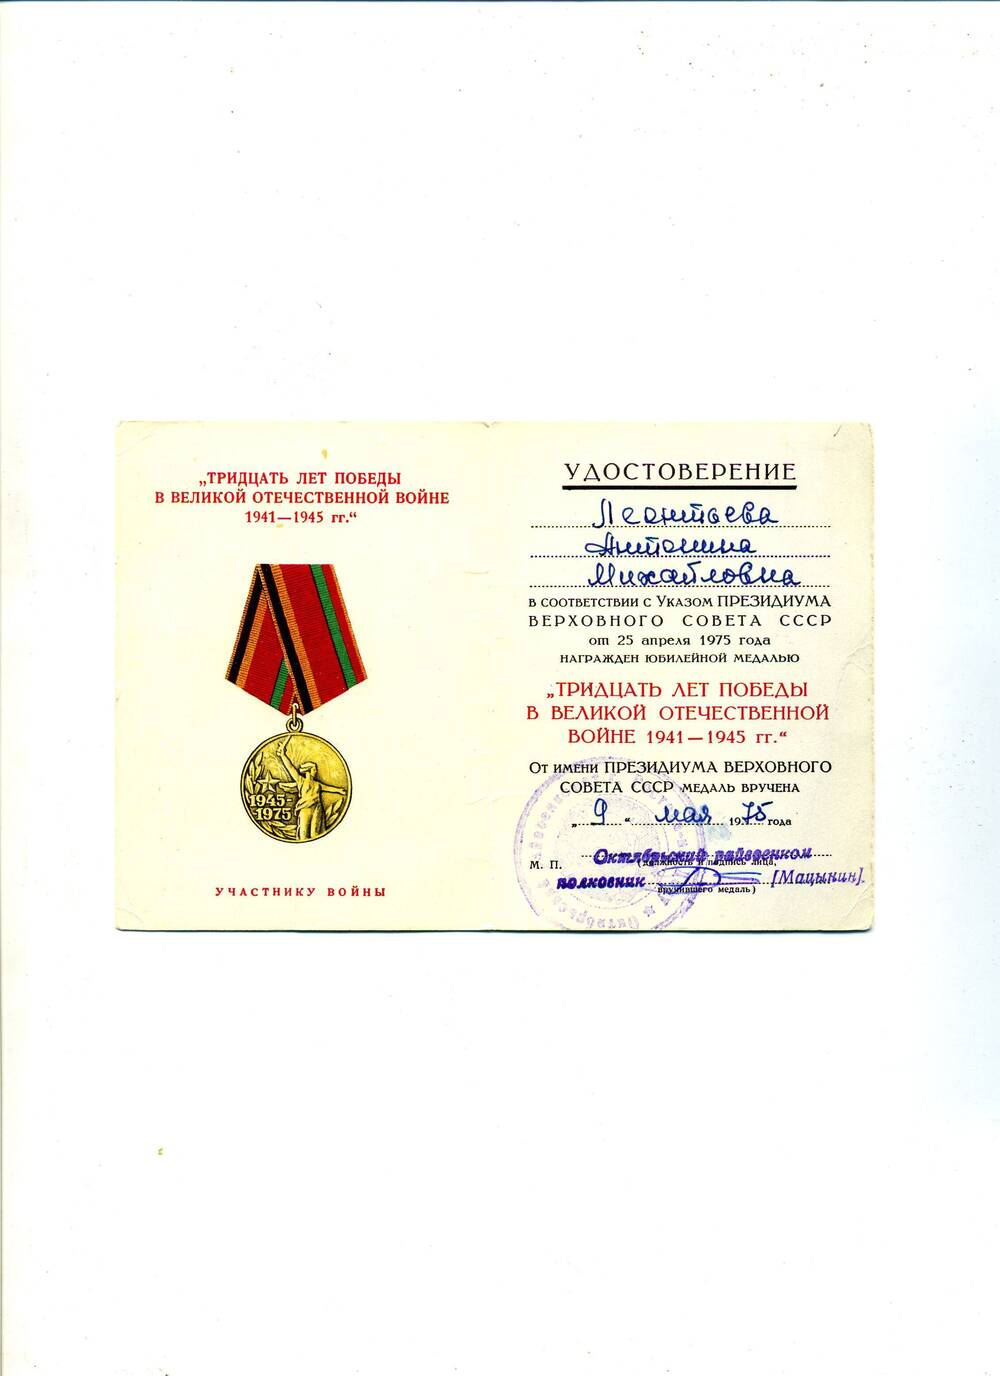 Удостоверение к юбилейной медали Тридцать лет Победы в Великой Отечественной войне 1941 - 1945 гг. от 9 мая 1975 г. Леонтьевой А.М.